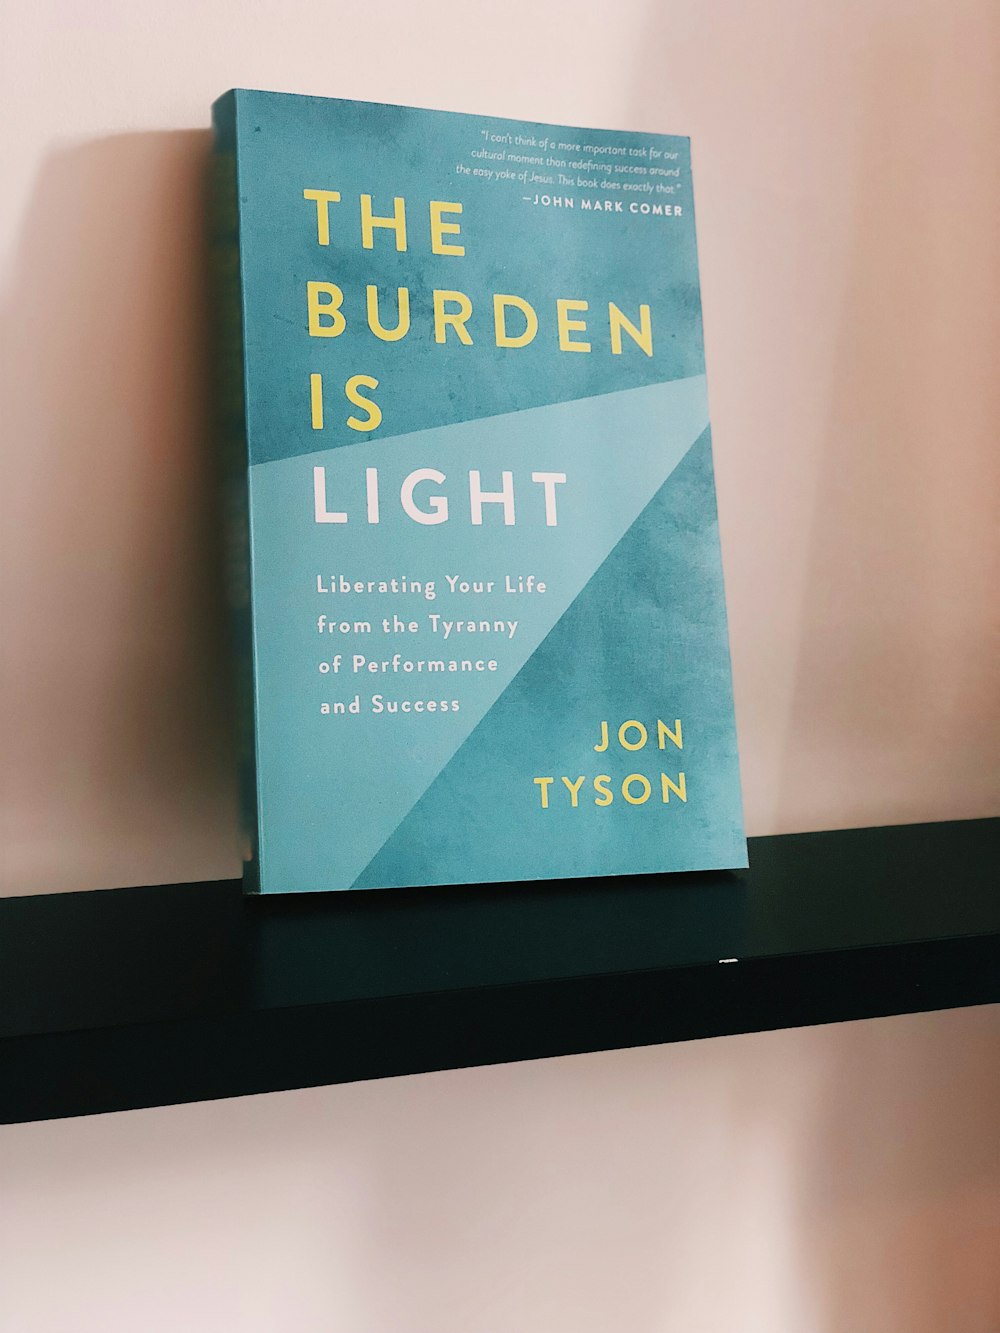 The Burden Is Light by Jon Tyson book on shelf